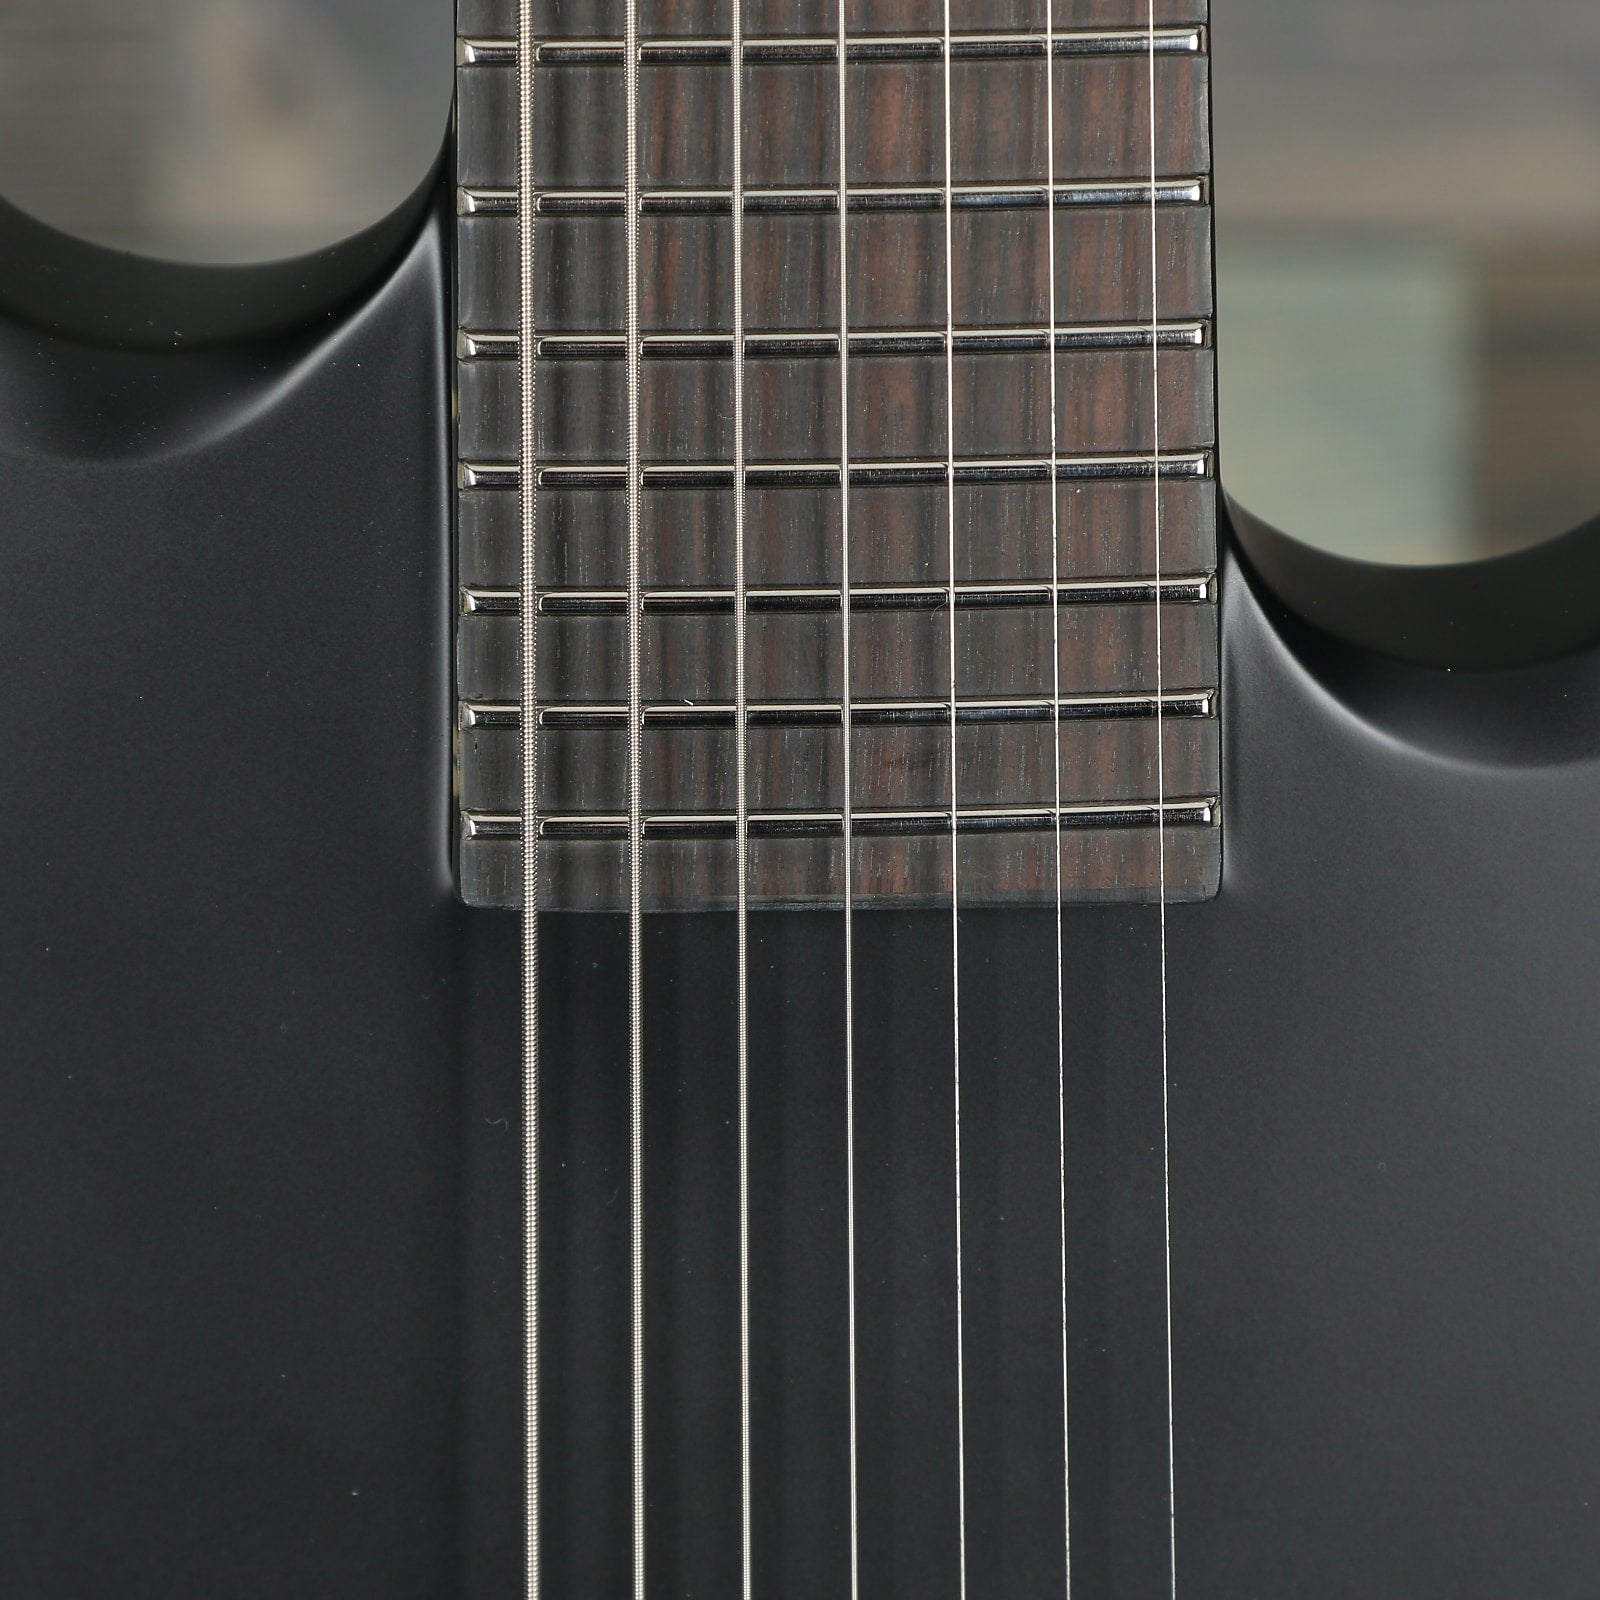 ESP LTD Viper-7 Baritone Black Metal - Black Satin